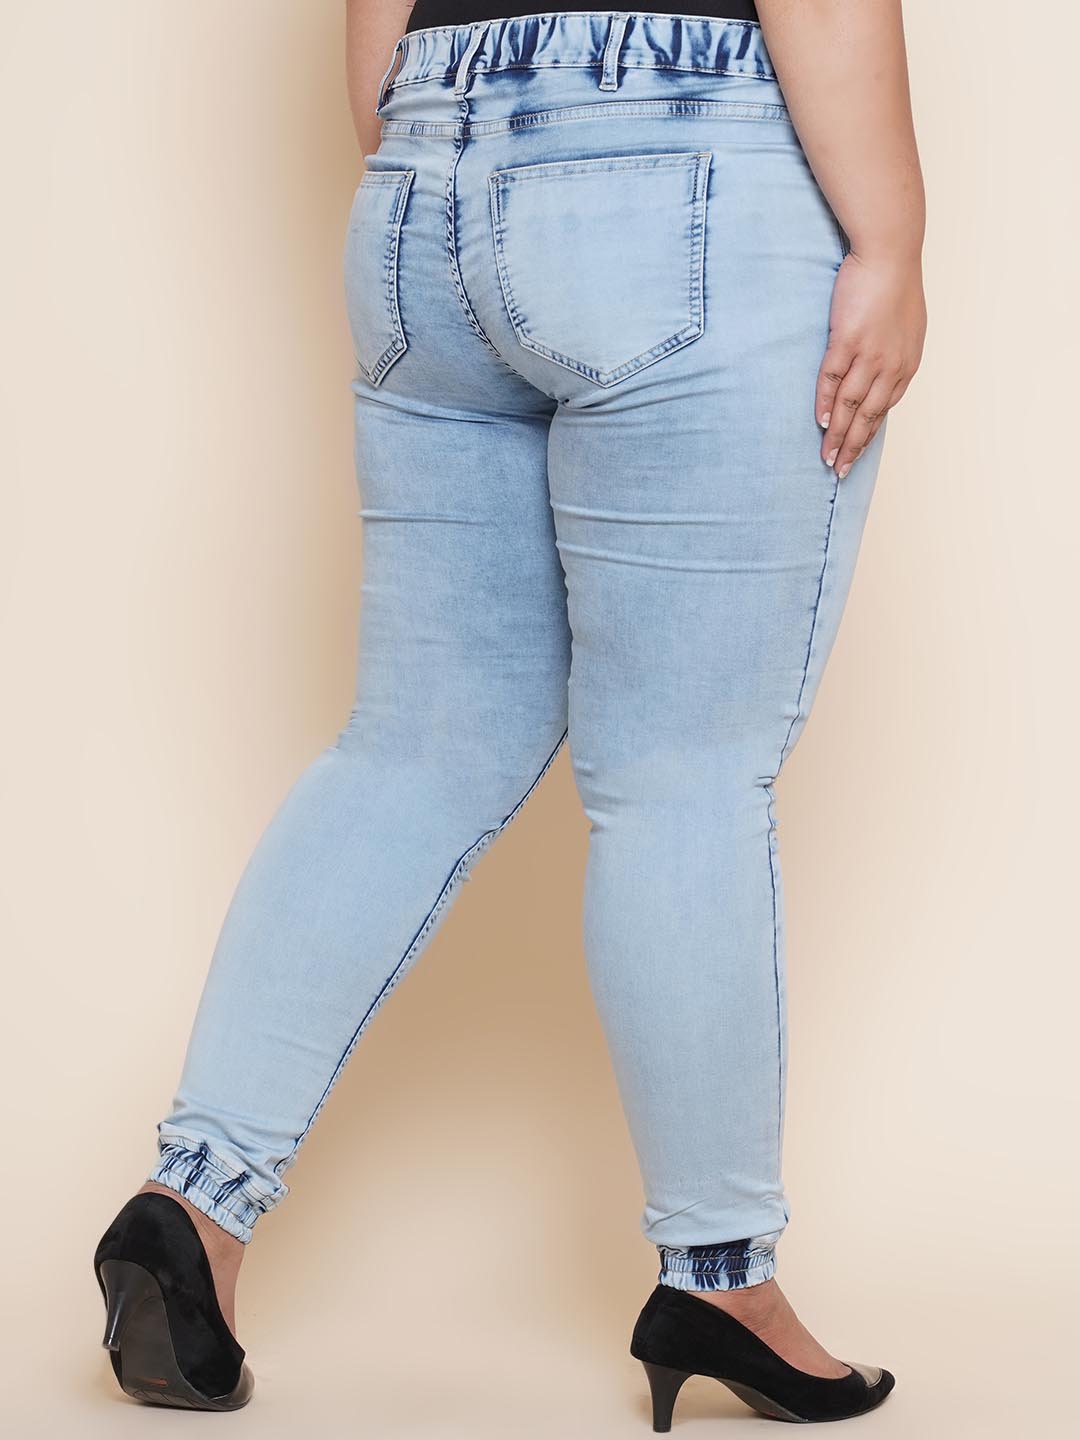 bottomwear_kiaahvi/jeans/KIJ6012/kij6012-5.jpg